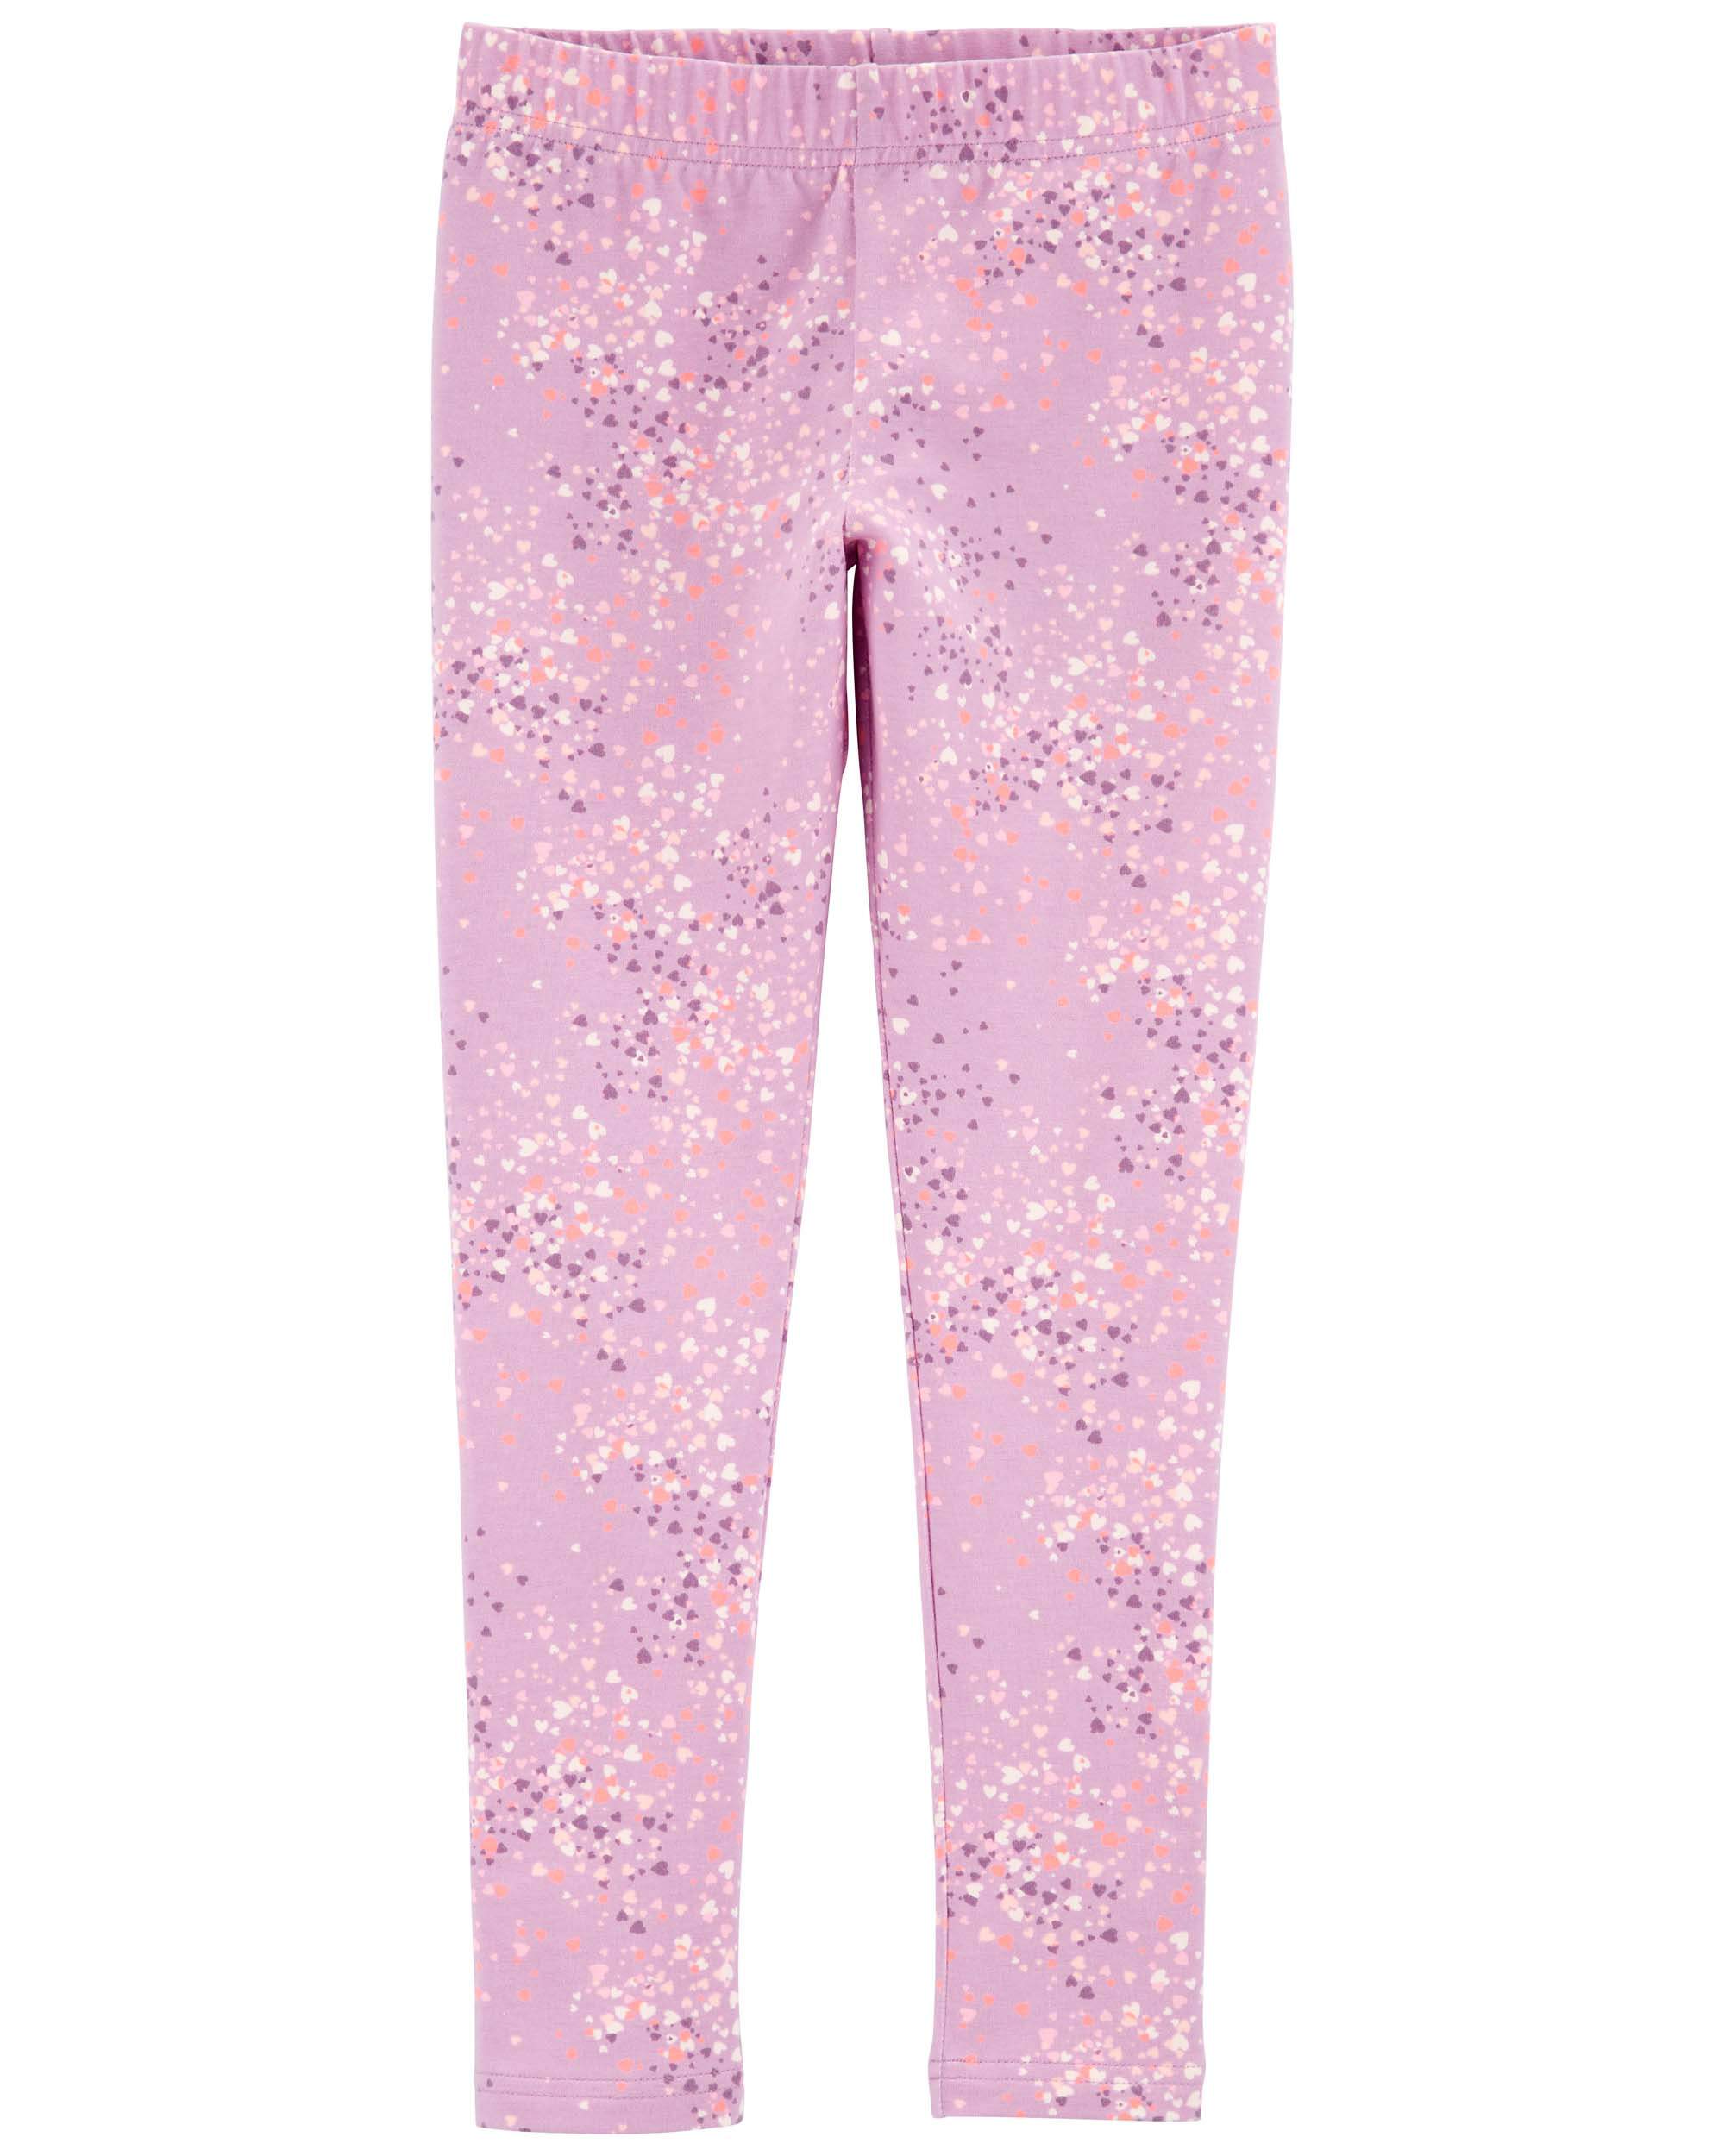 pink shiny leggings for kids, stylish, glamorous